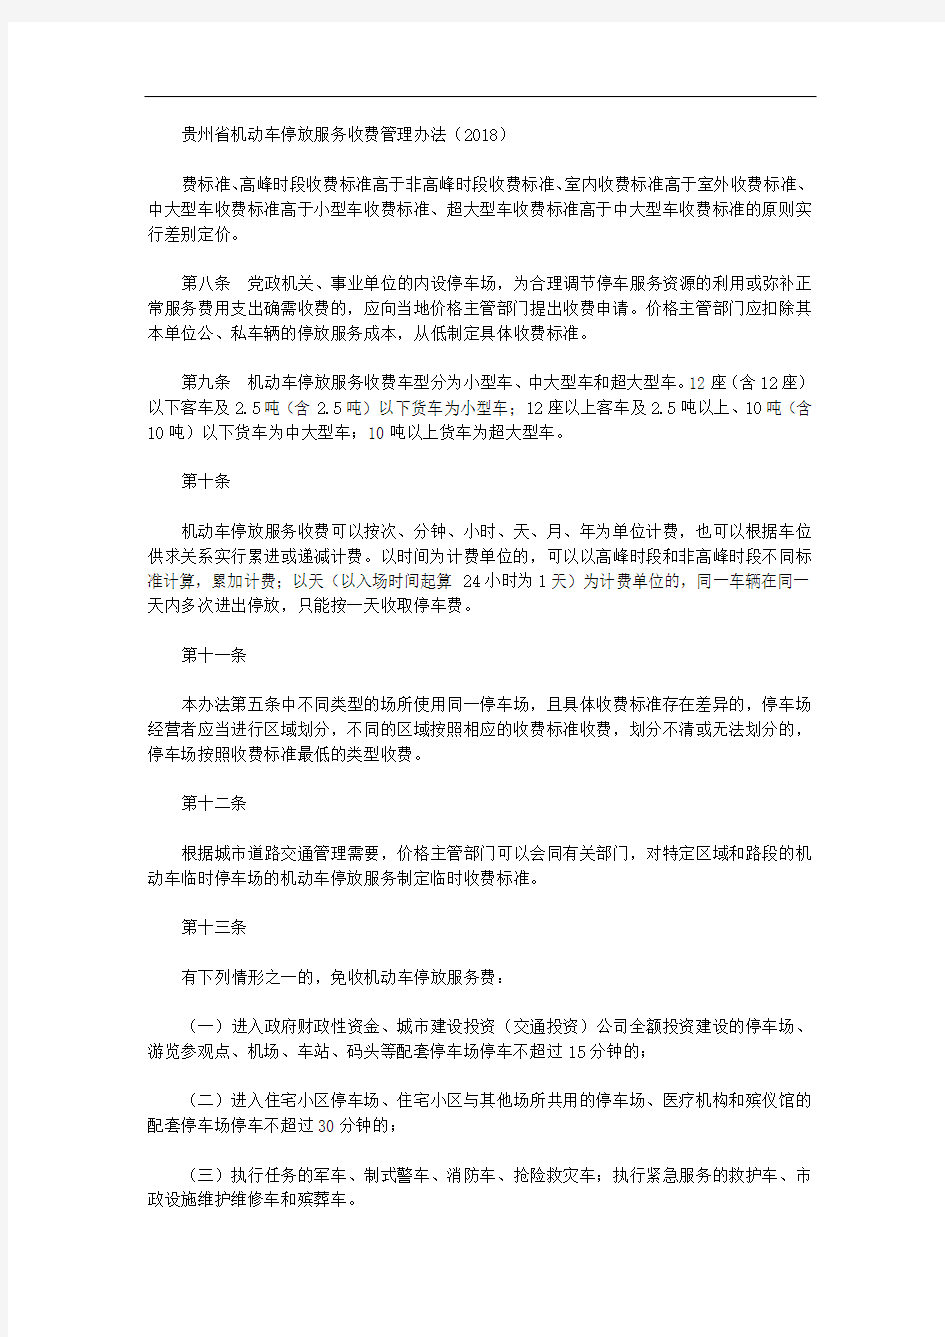 贵州省机动车停放服务收费管理办法(2018)